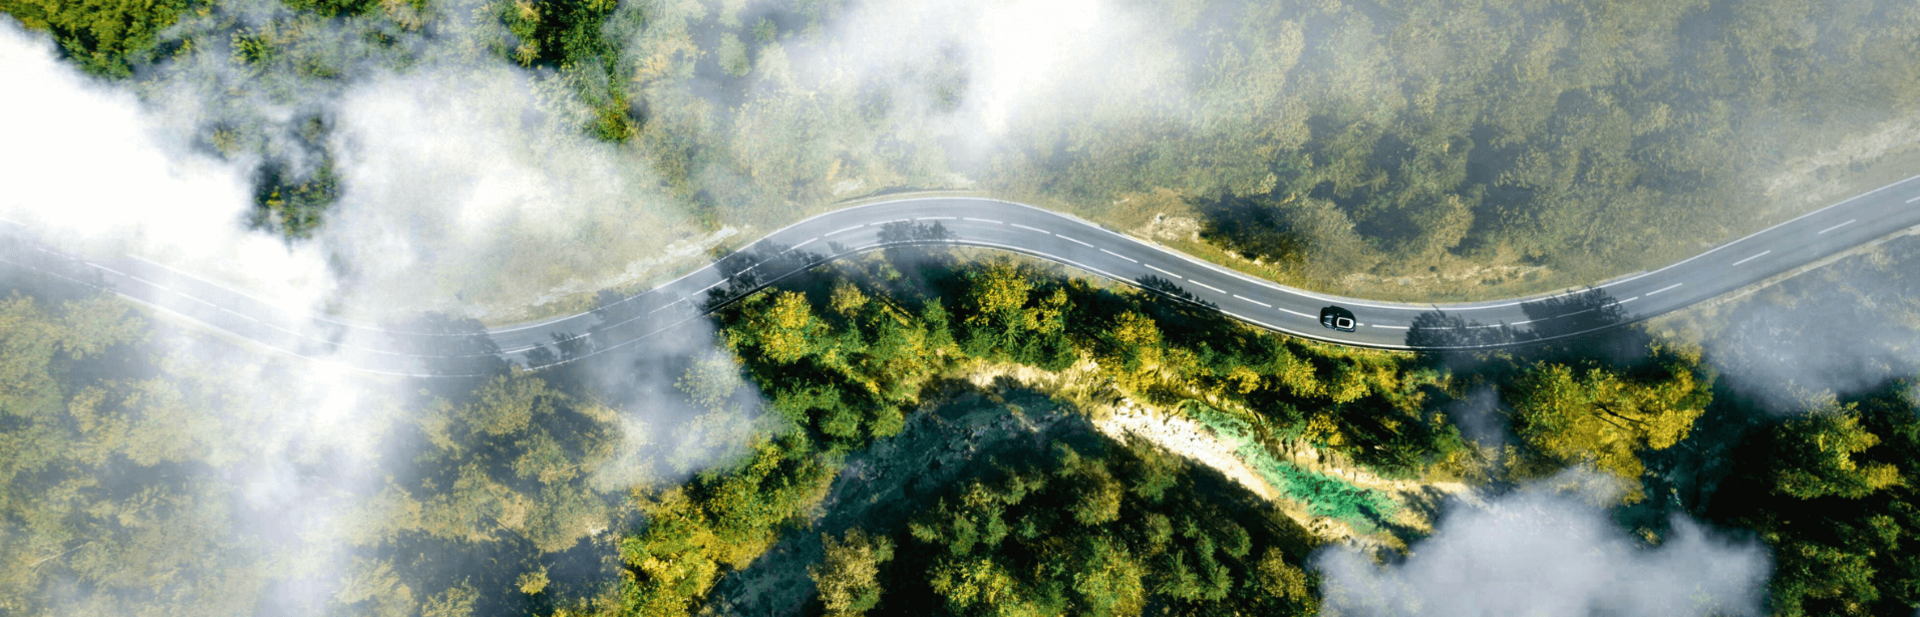 Luftaufnahme einer Straße durch einen nebligen Wald.